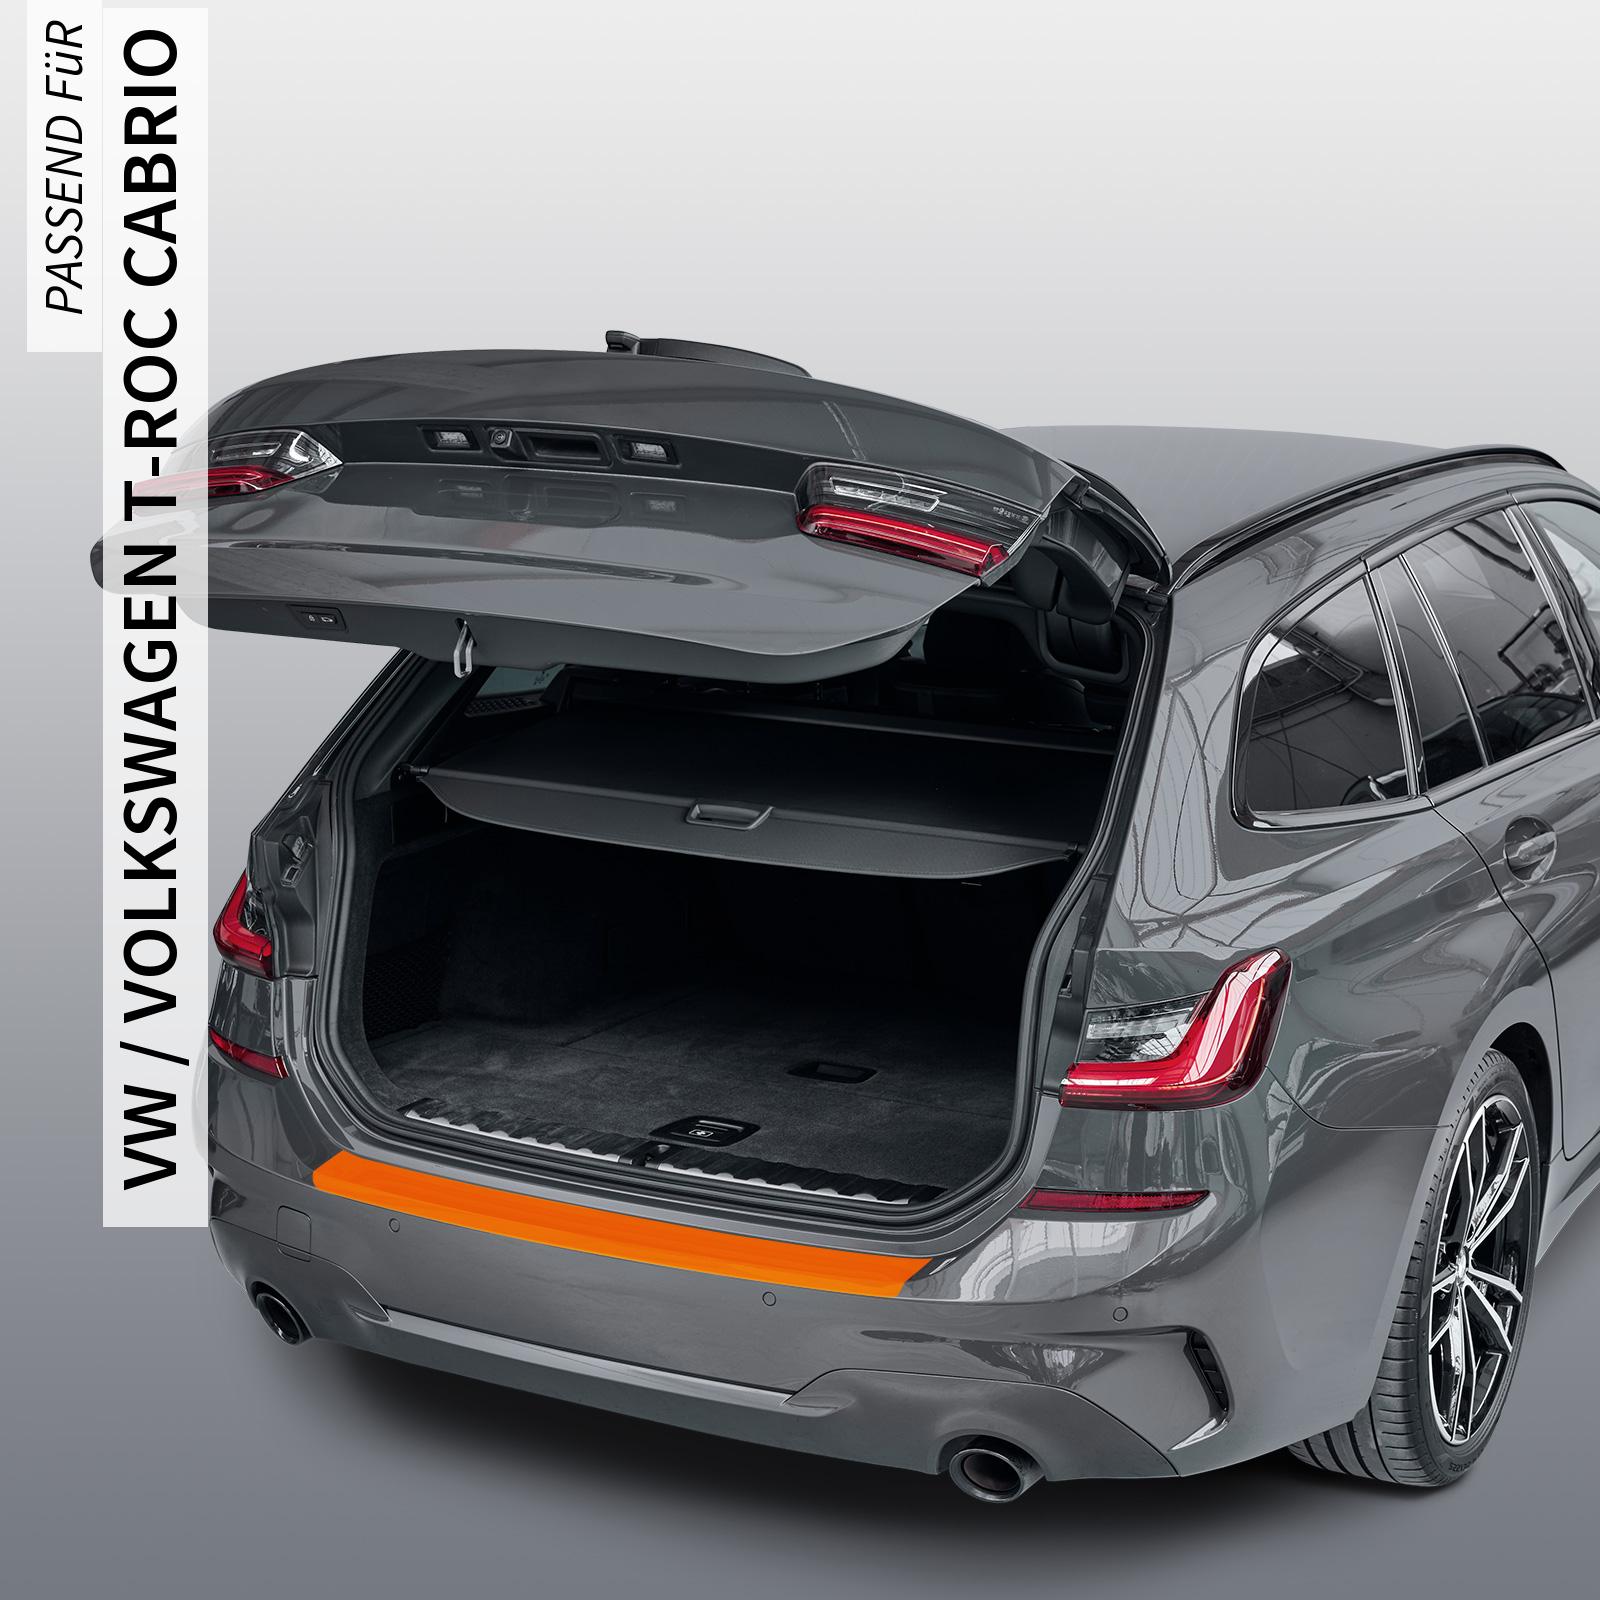 Ladekantenschutzfolie - Transparent Glatt MATT 110 µm stark  für VW / Volkswagen T-Roc Cabrio Typ A1, ab BJ 08/2019 + Facelift